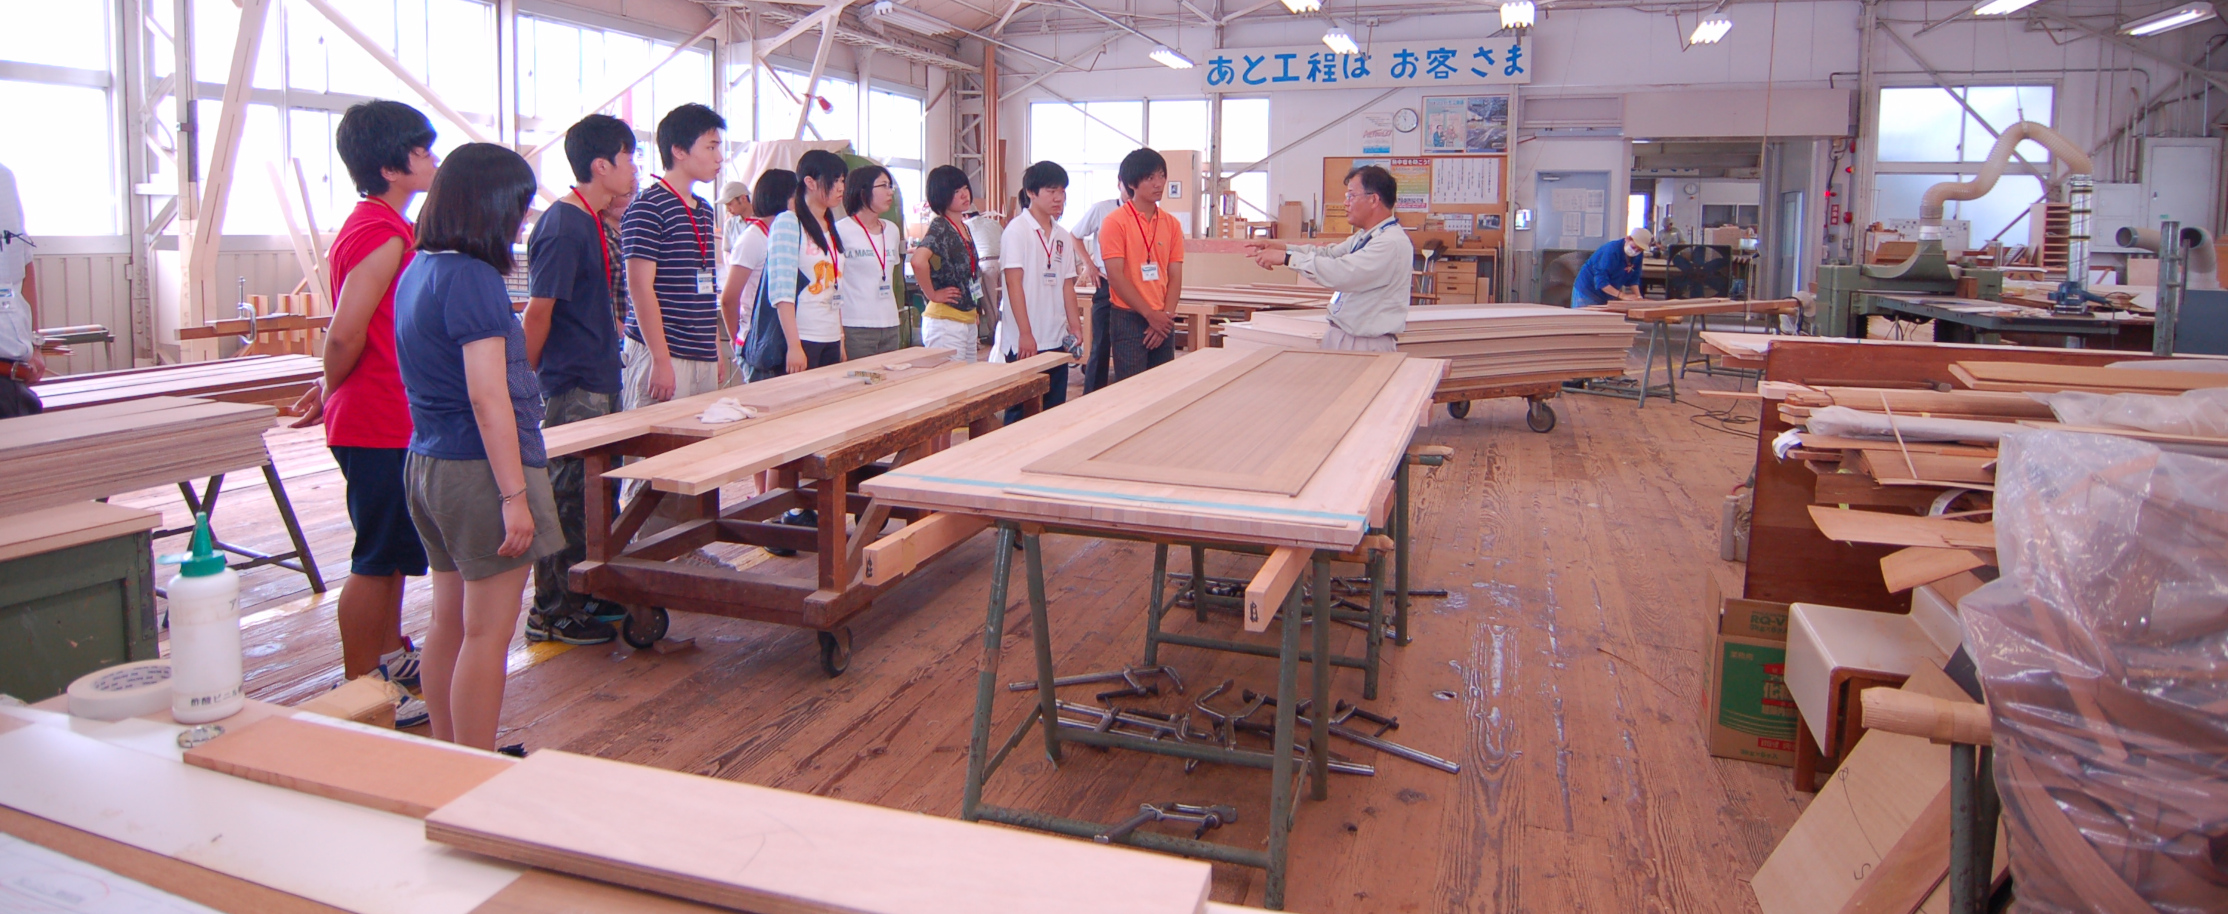 木の可能性を探る Vol.7 東京木工場がものづくり体験学習の場に